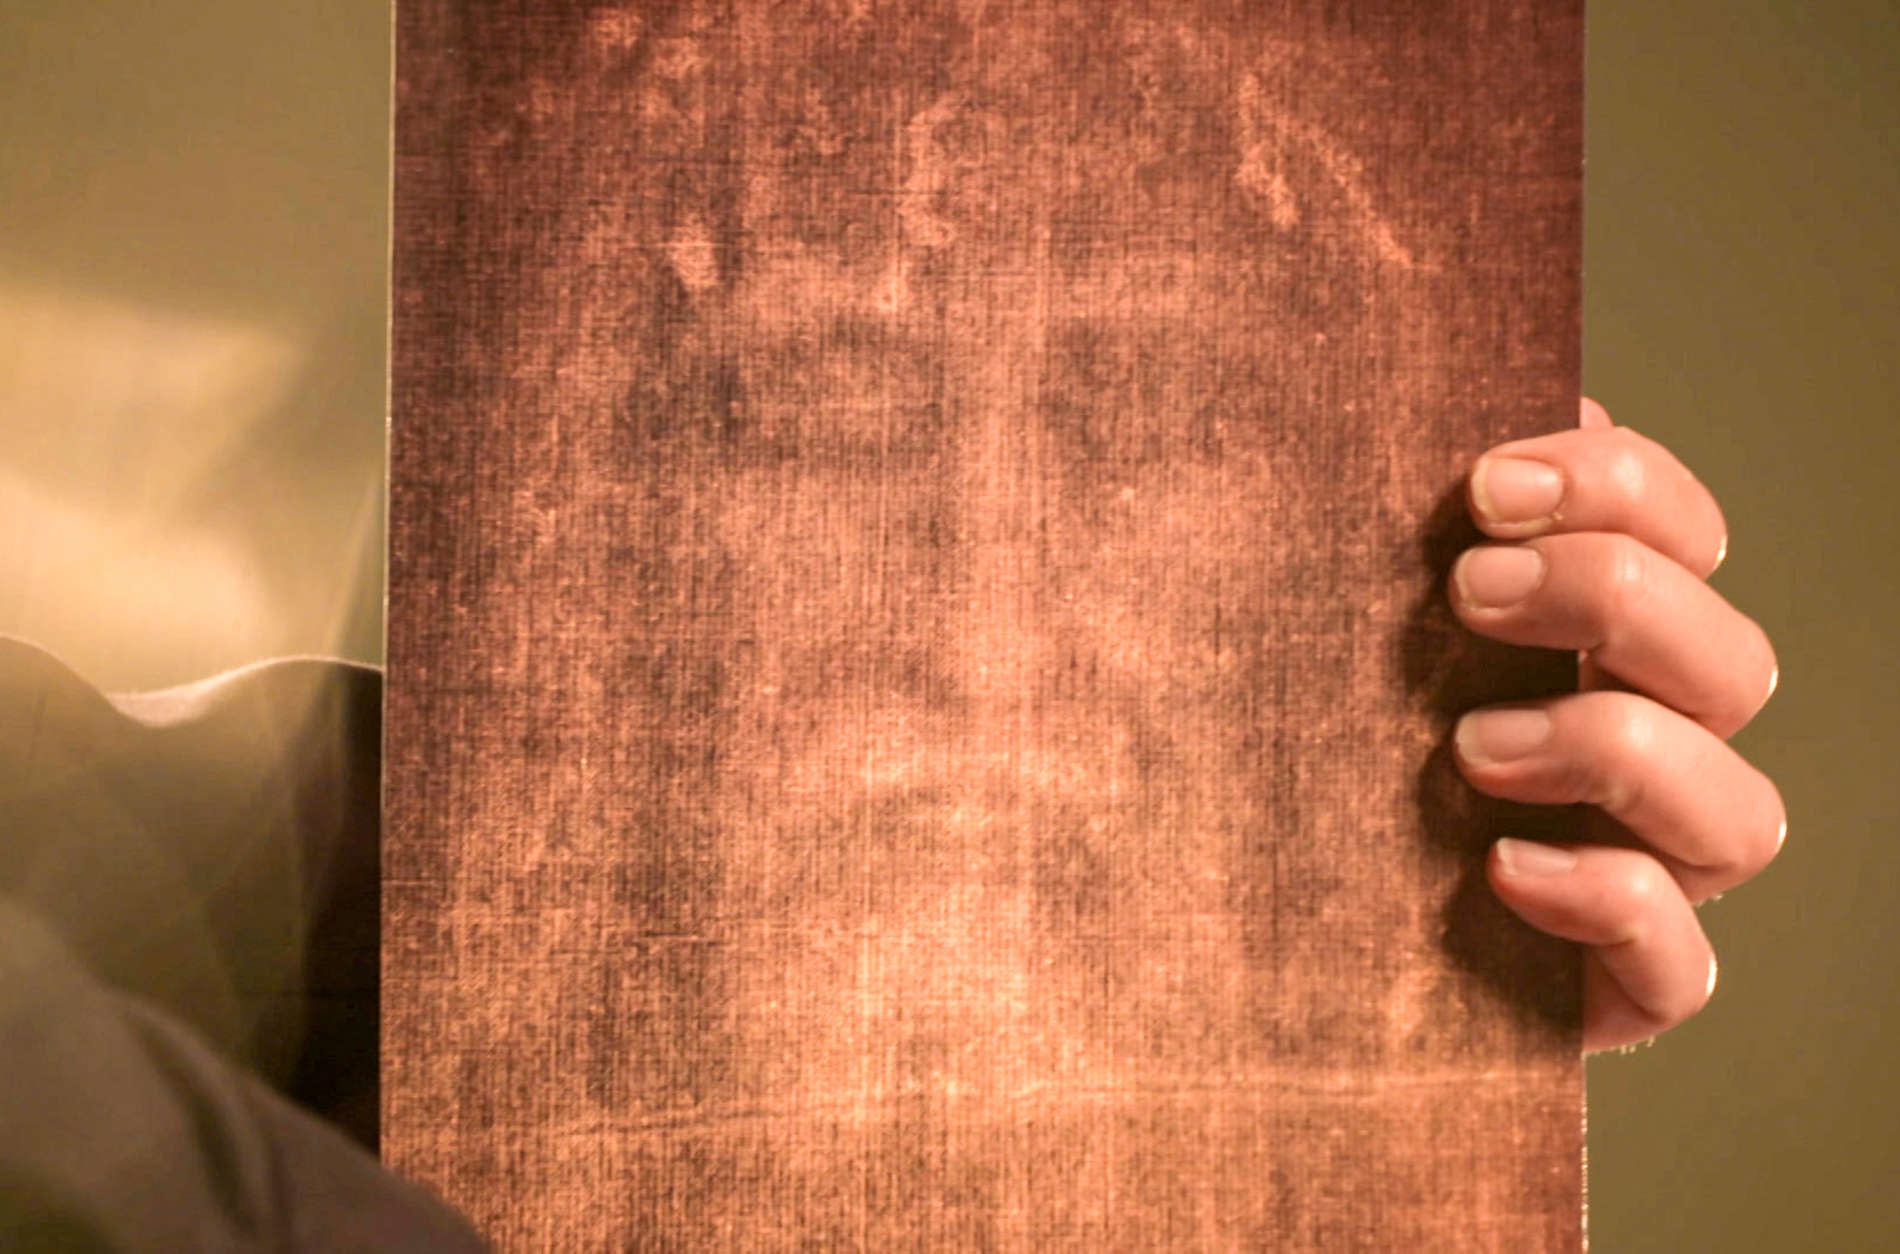 Diese Detailaufnahme des Grabtuches zeigt angeblich das Gesicht von Christus. Handelt es sich hierbei um einen authentischen Abdruck oder lediglich um ein aufgemaltes Porträt?